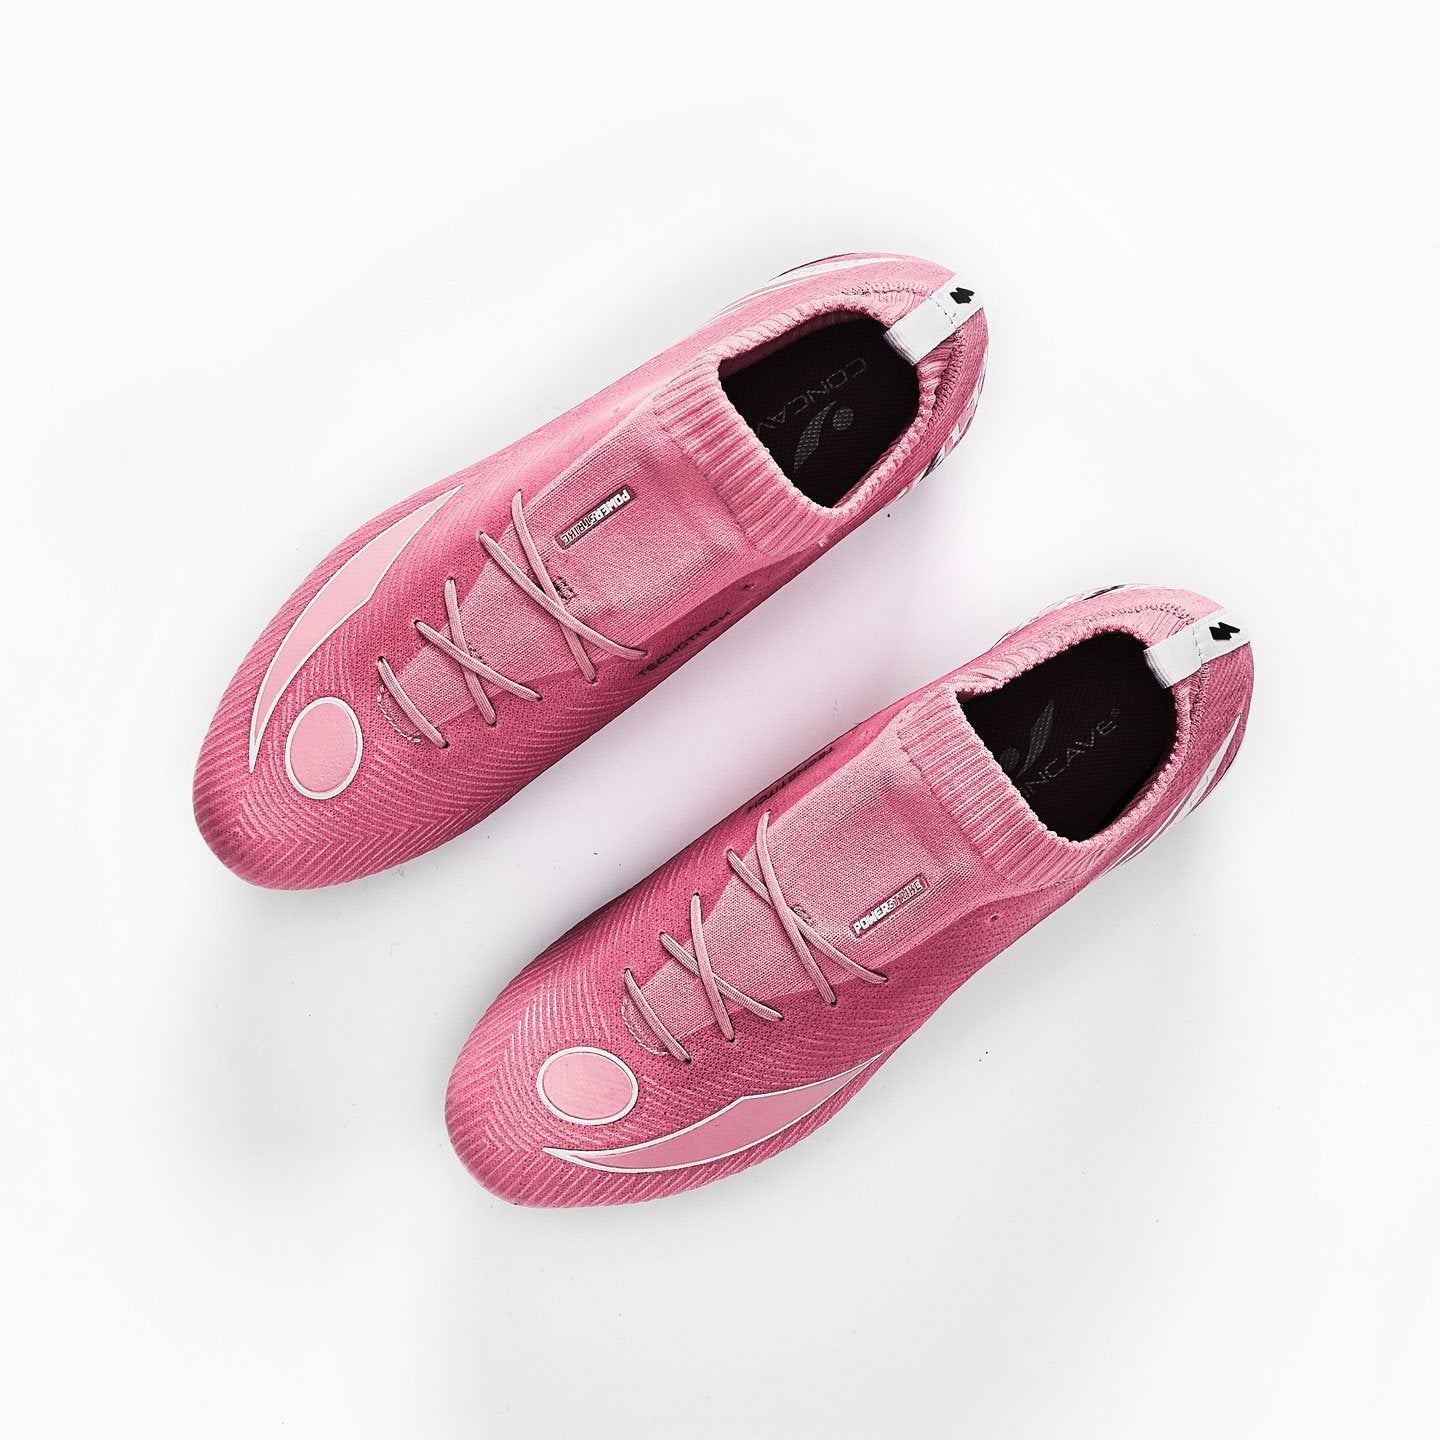 Concave Volt + Knit FG - Pink/Silver